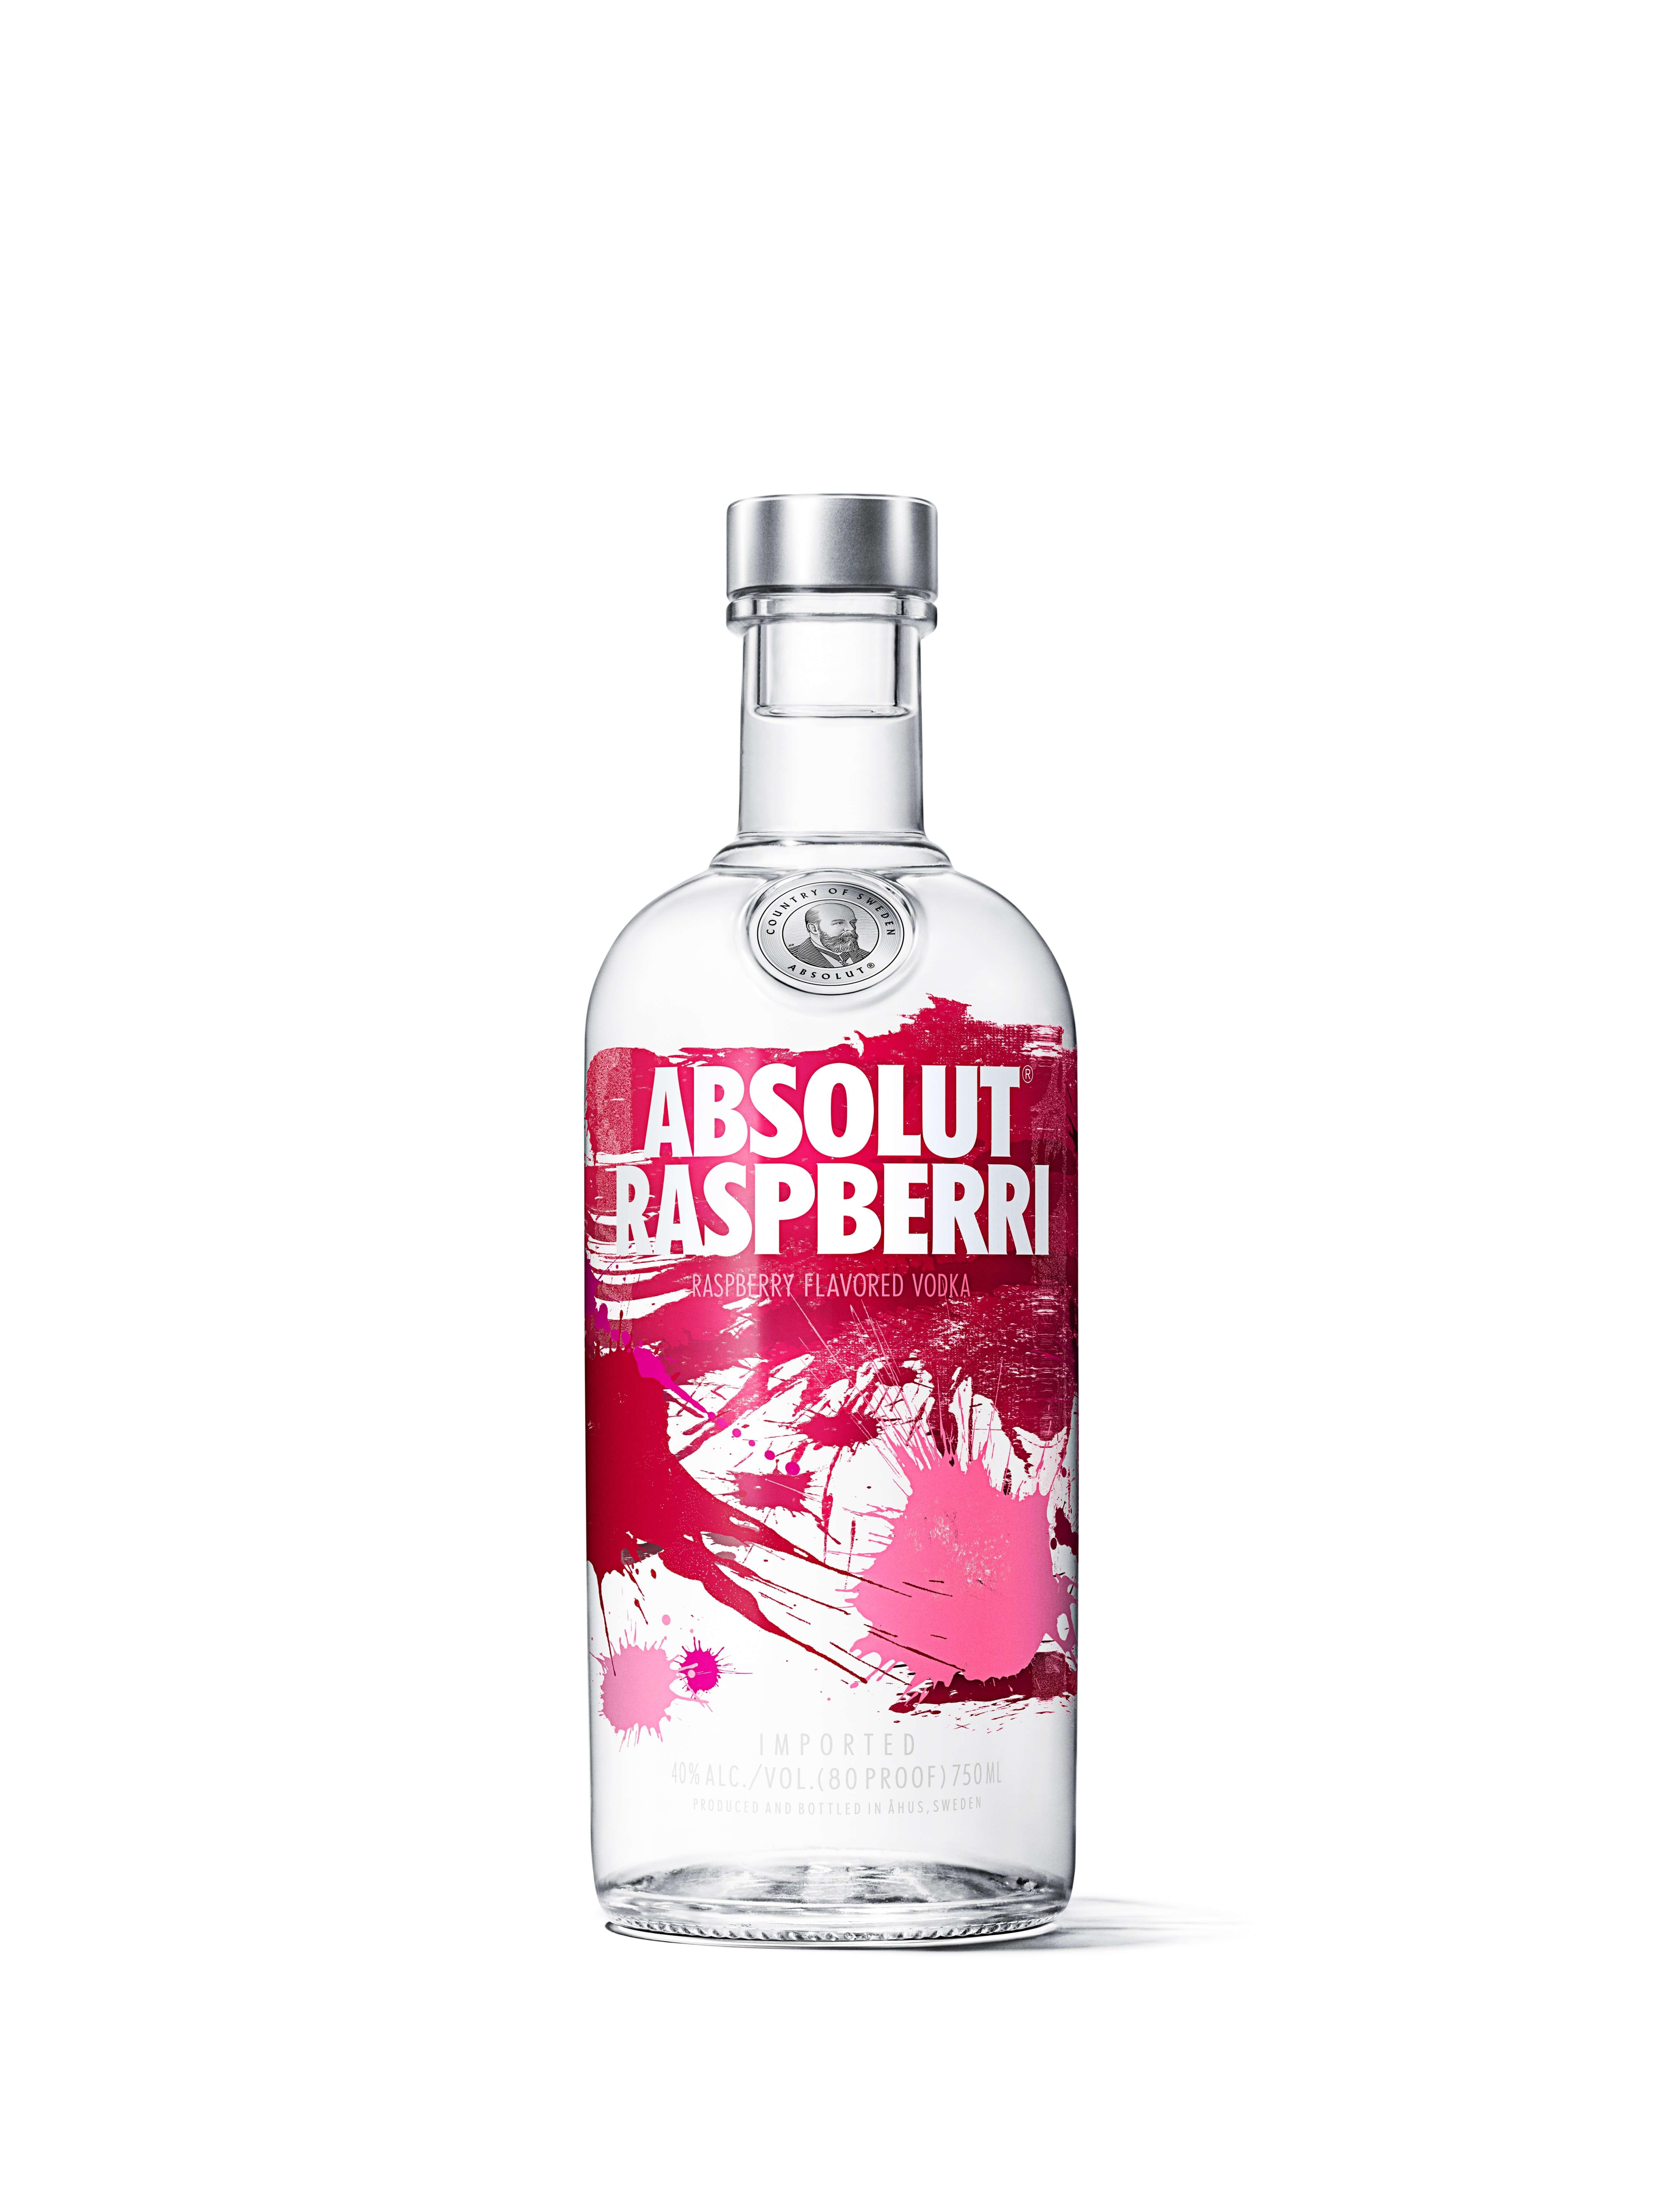 Absolut Raspberri Vodka Flavored - 750ml Bottle